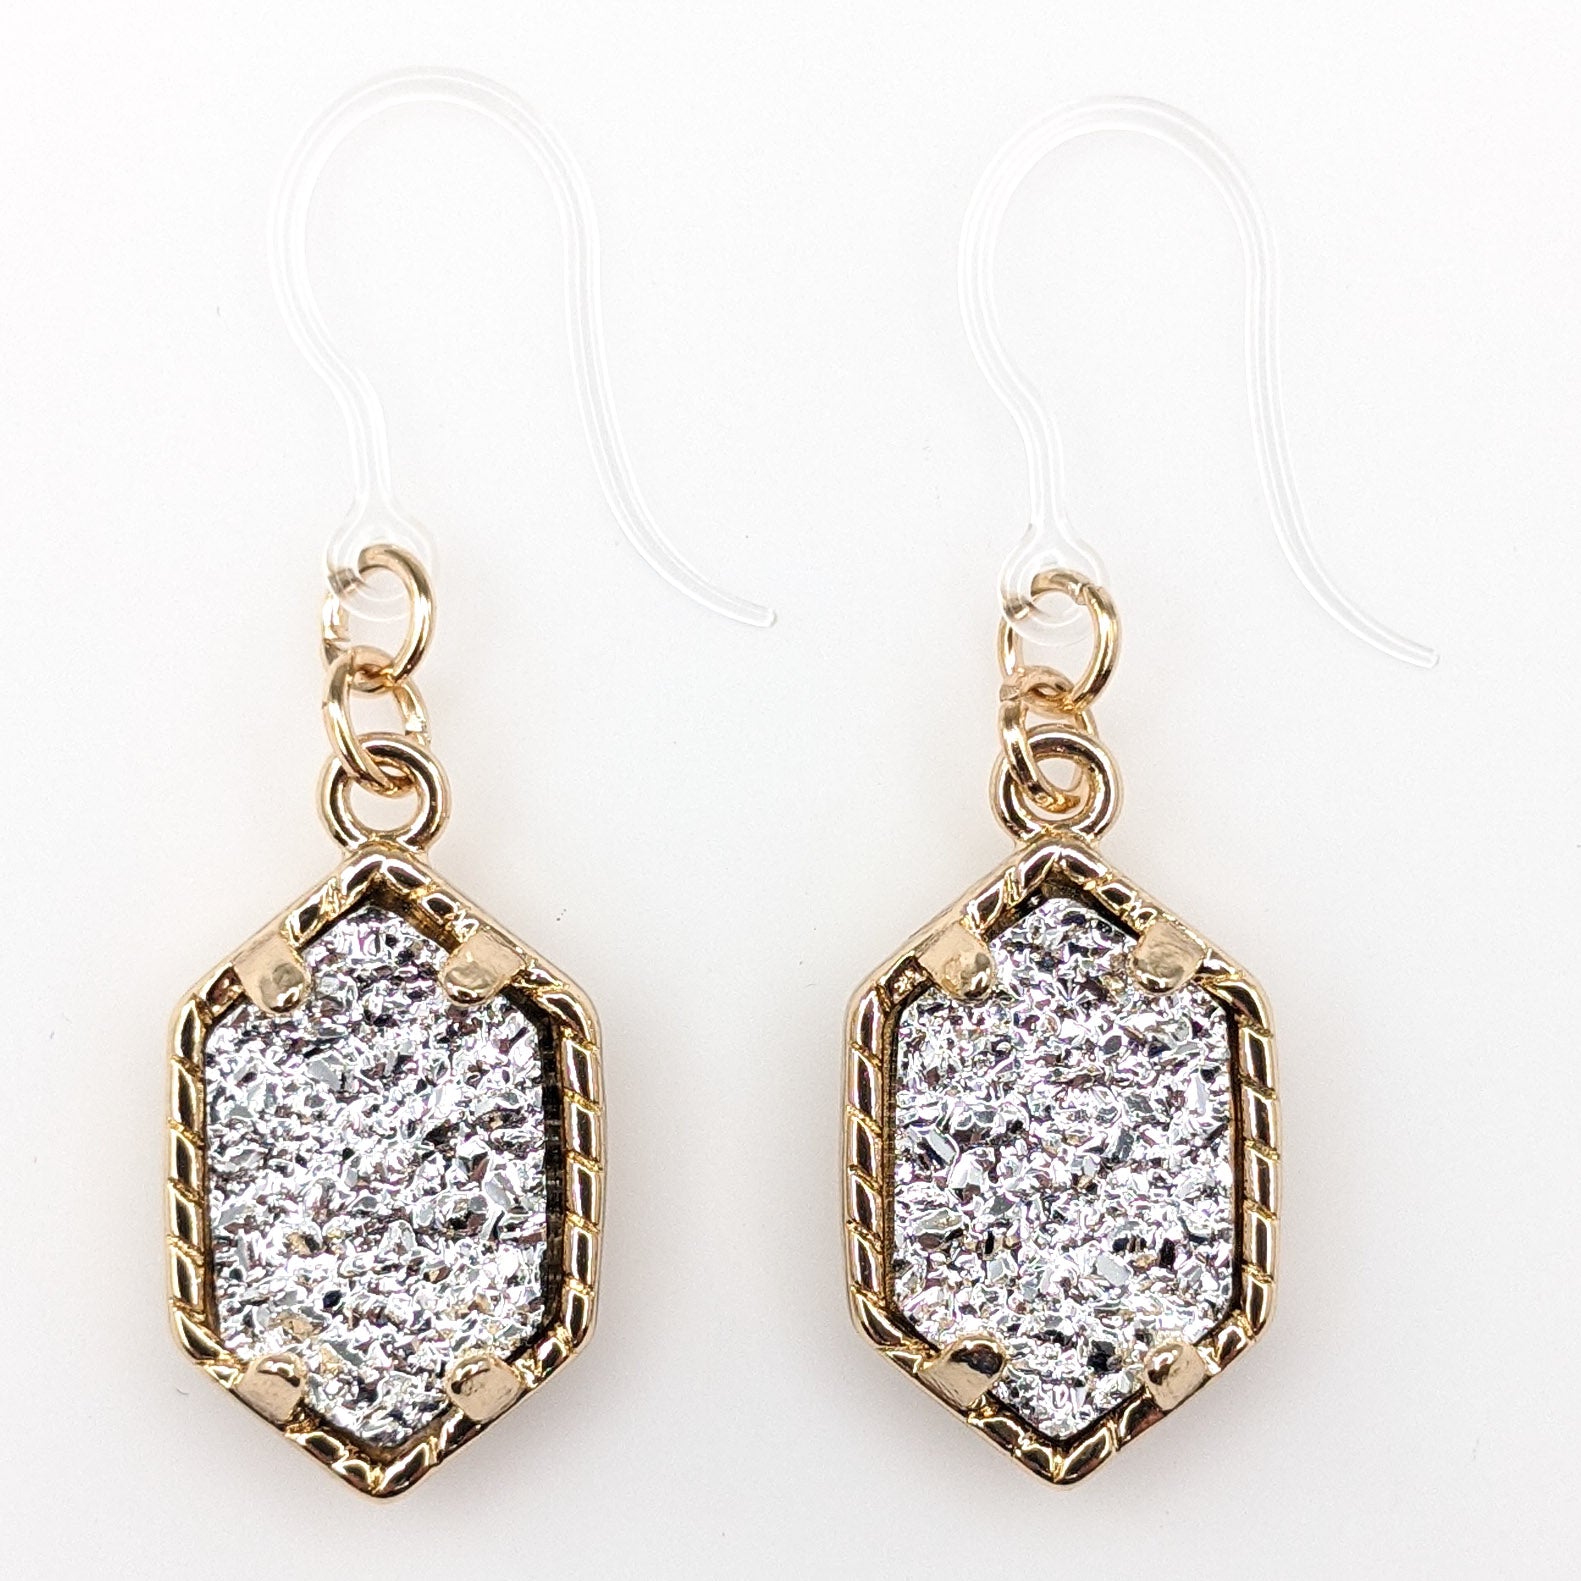 Petite Faux Druzy Drop Earrings (Dangles) - silver/gold